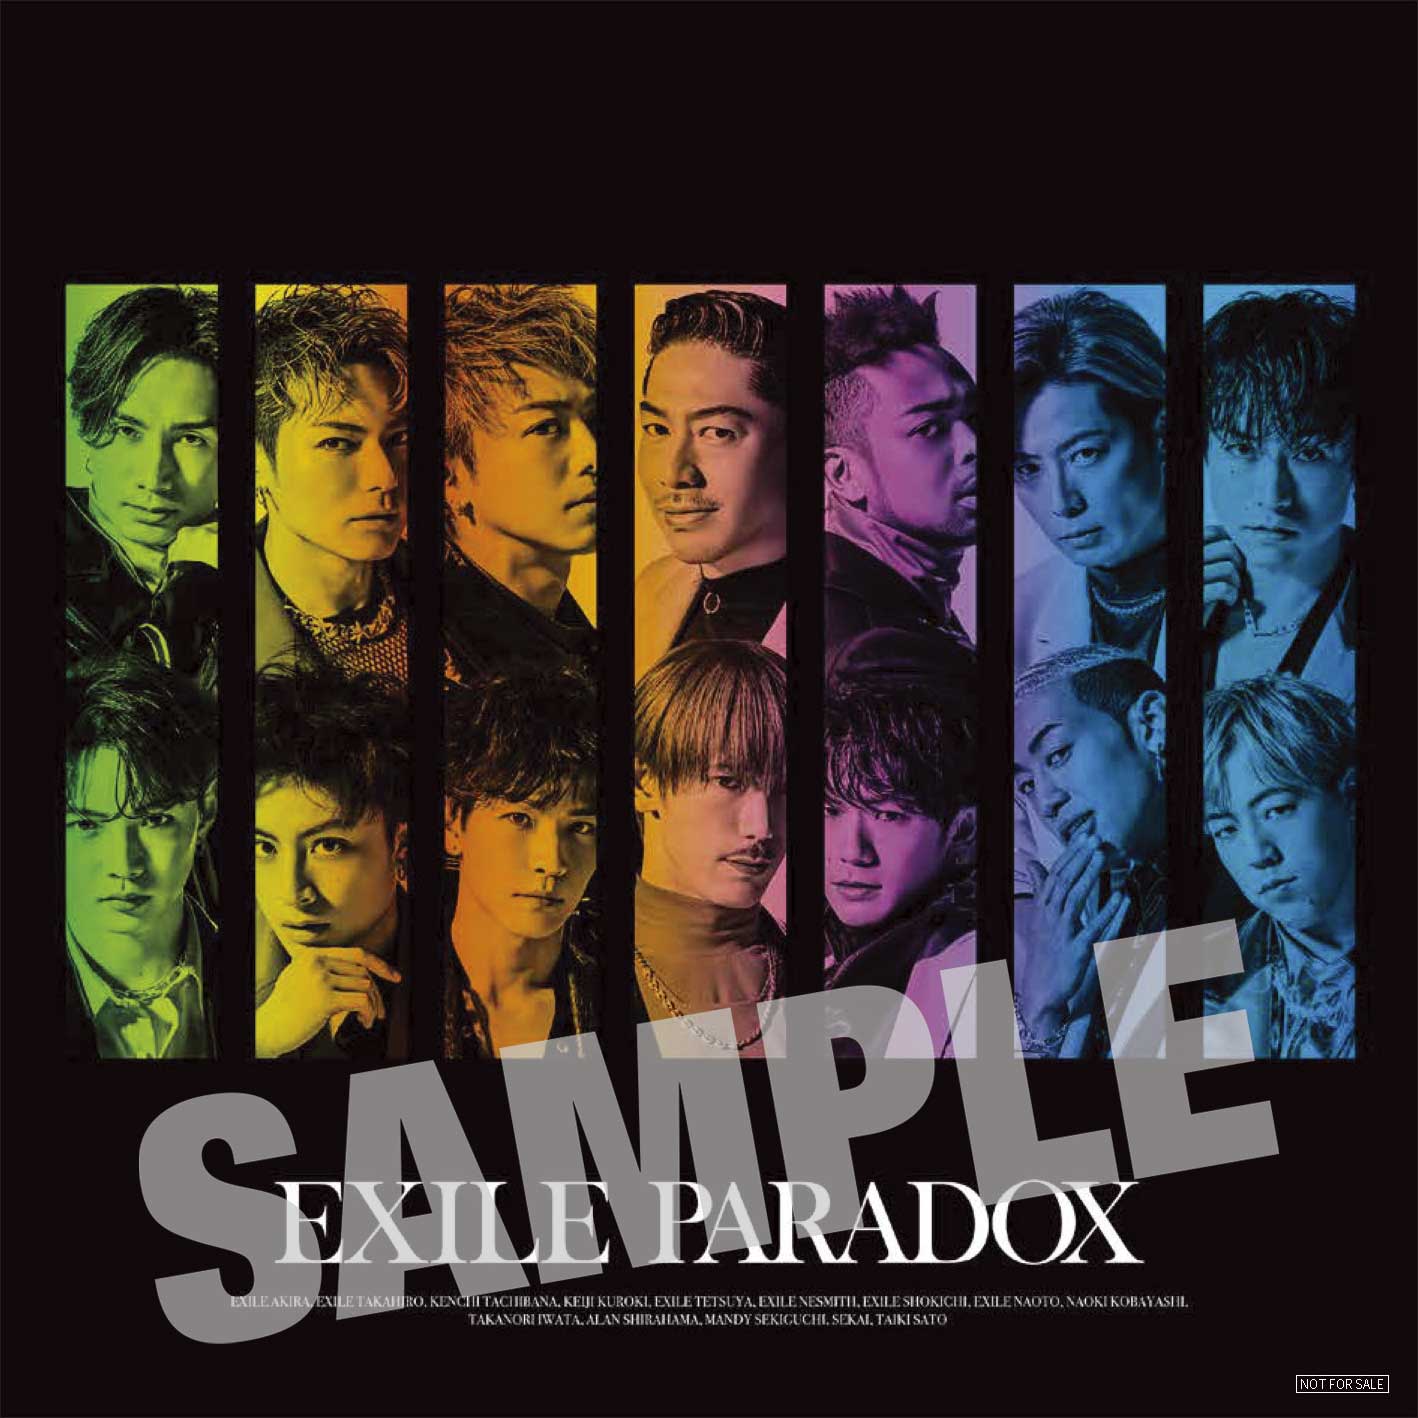 NEWS[4月27日リリースEXILE 2021年第一弾シングル『PARADOX』全国CD SHOP先着特典デザイン公開!!]| EXILE